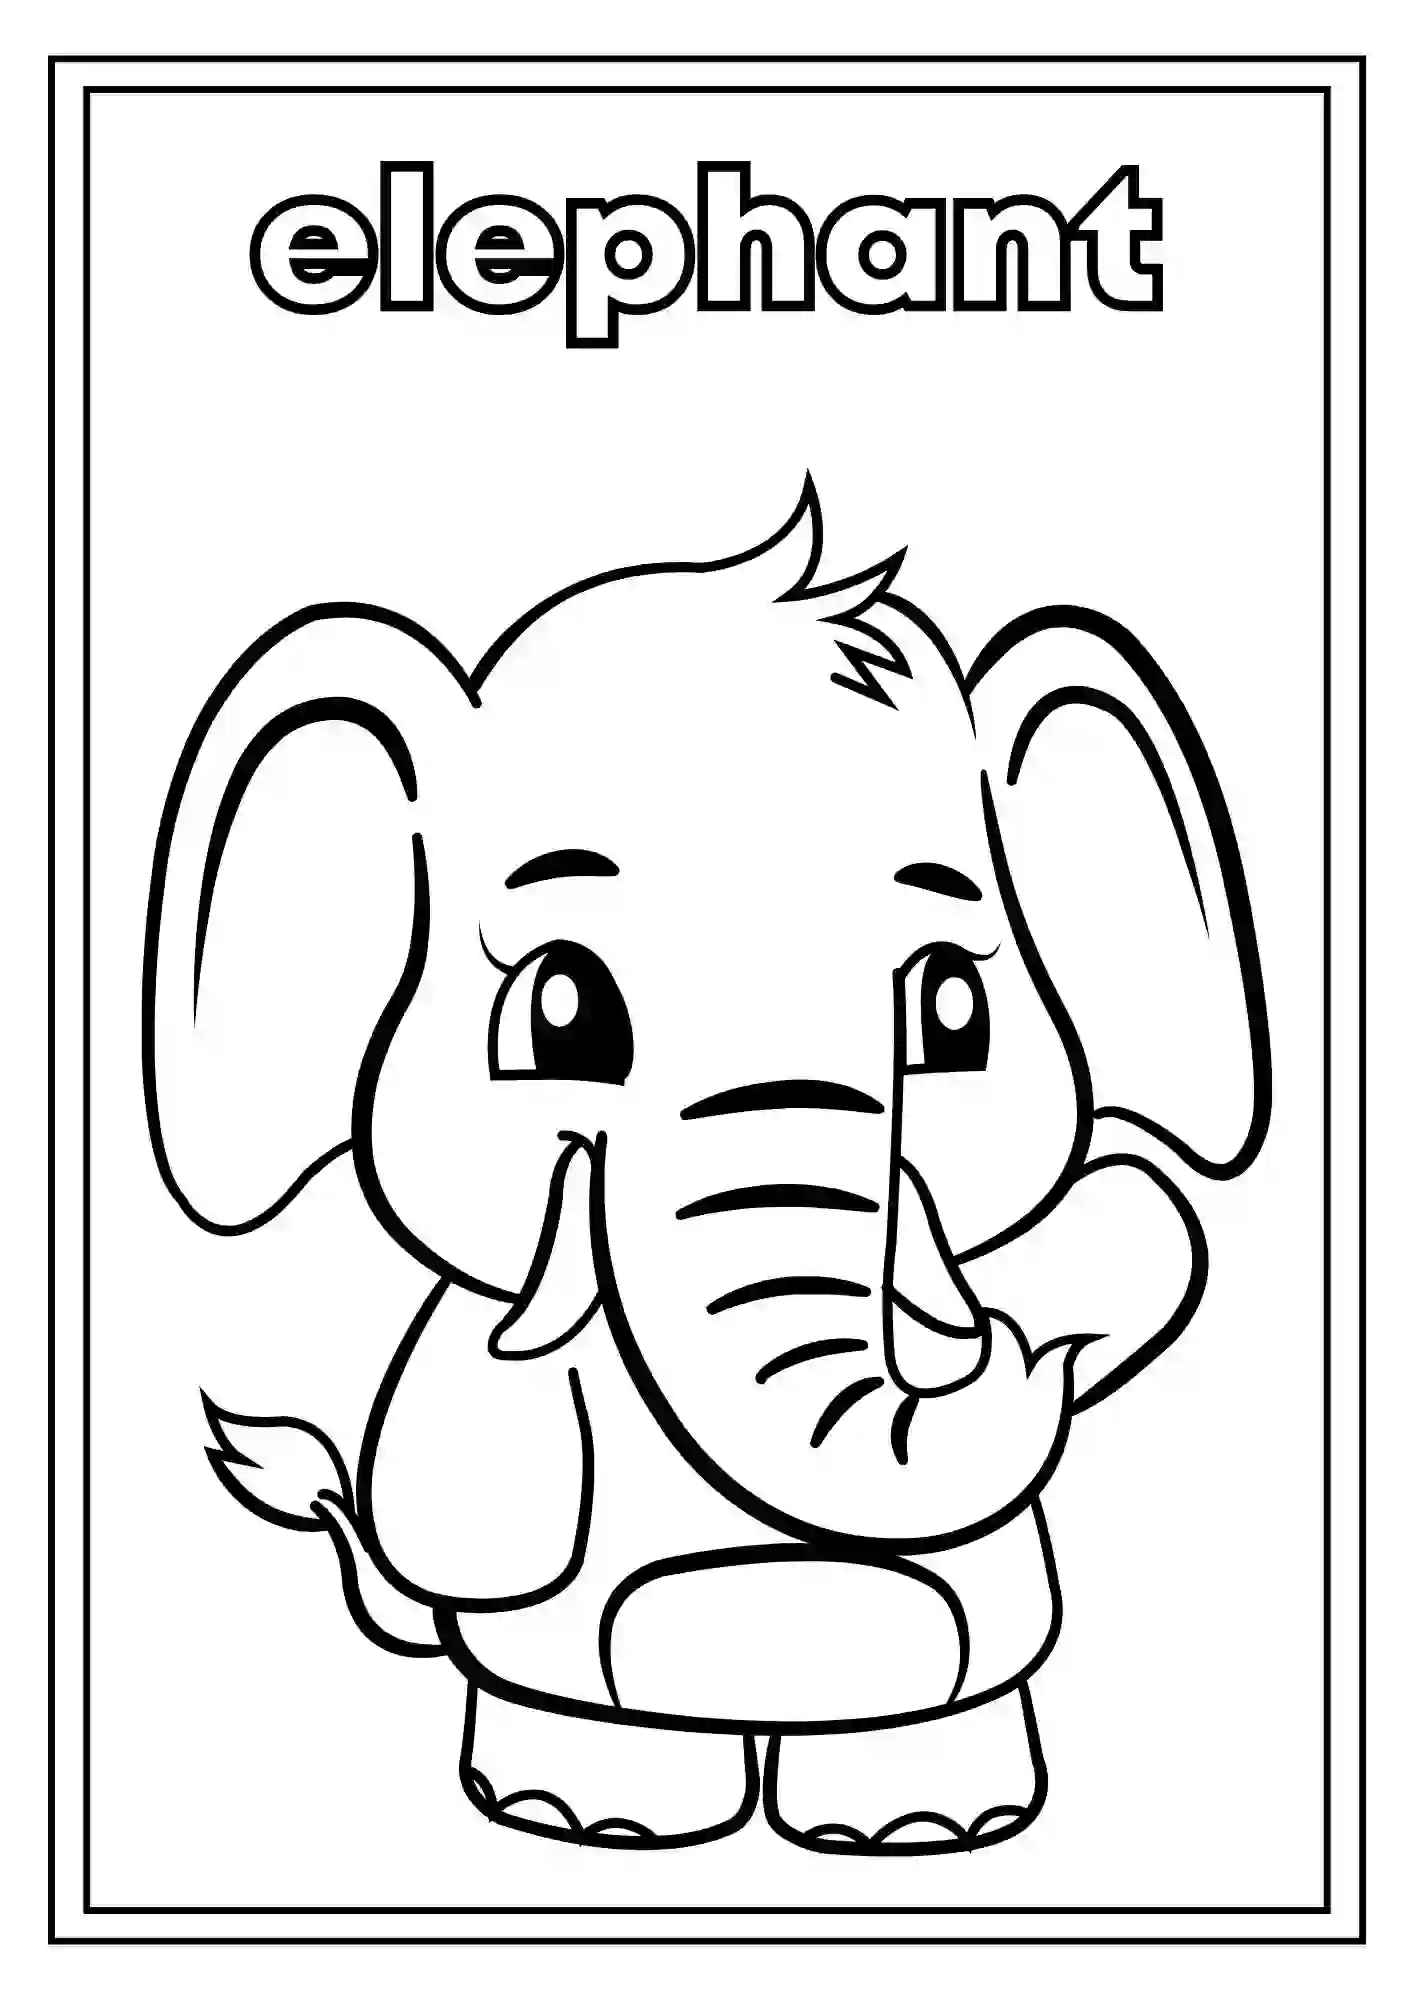 Animal Coloring Worksheets for Kindergarten Part 2 (ELEPHANT)